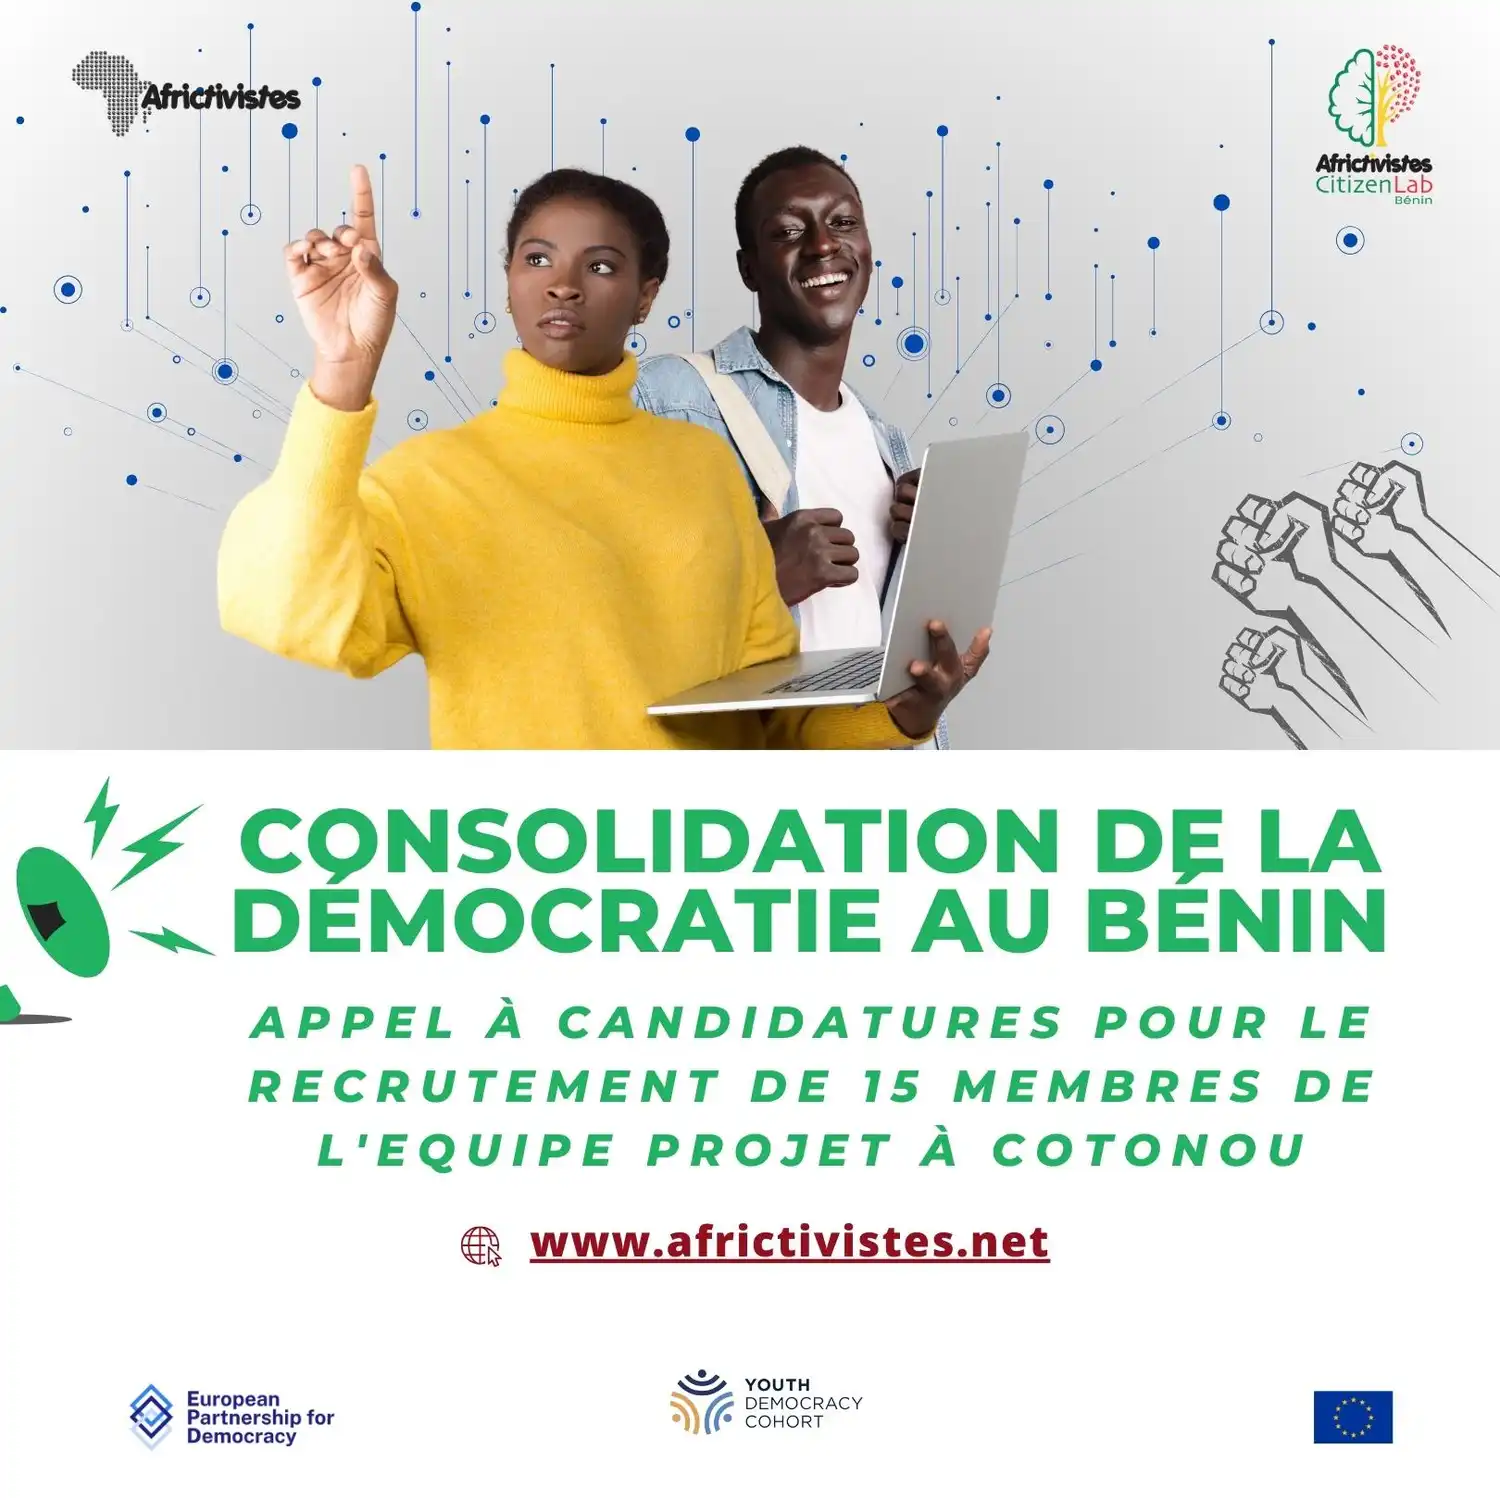 Initiative Citoyenne pour la Promotion de l’Engagement et de la Participation Citoyenne des jeunes au Bénin